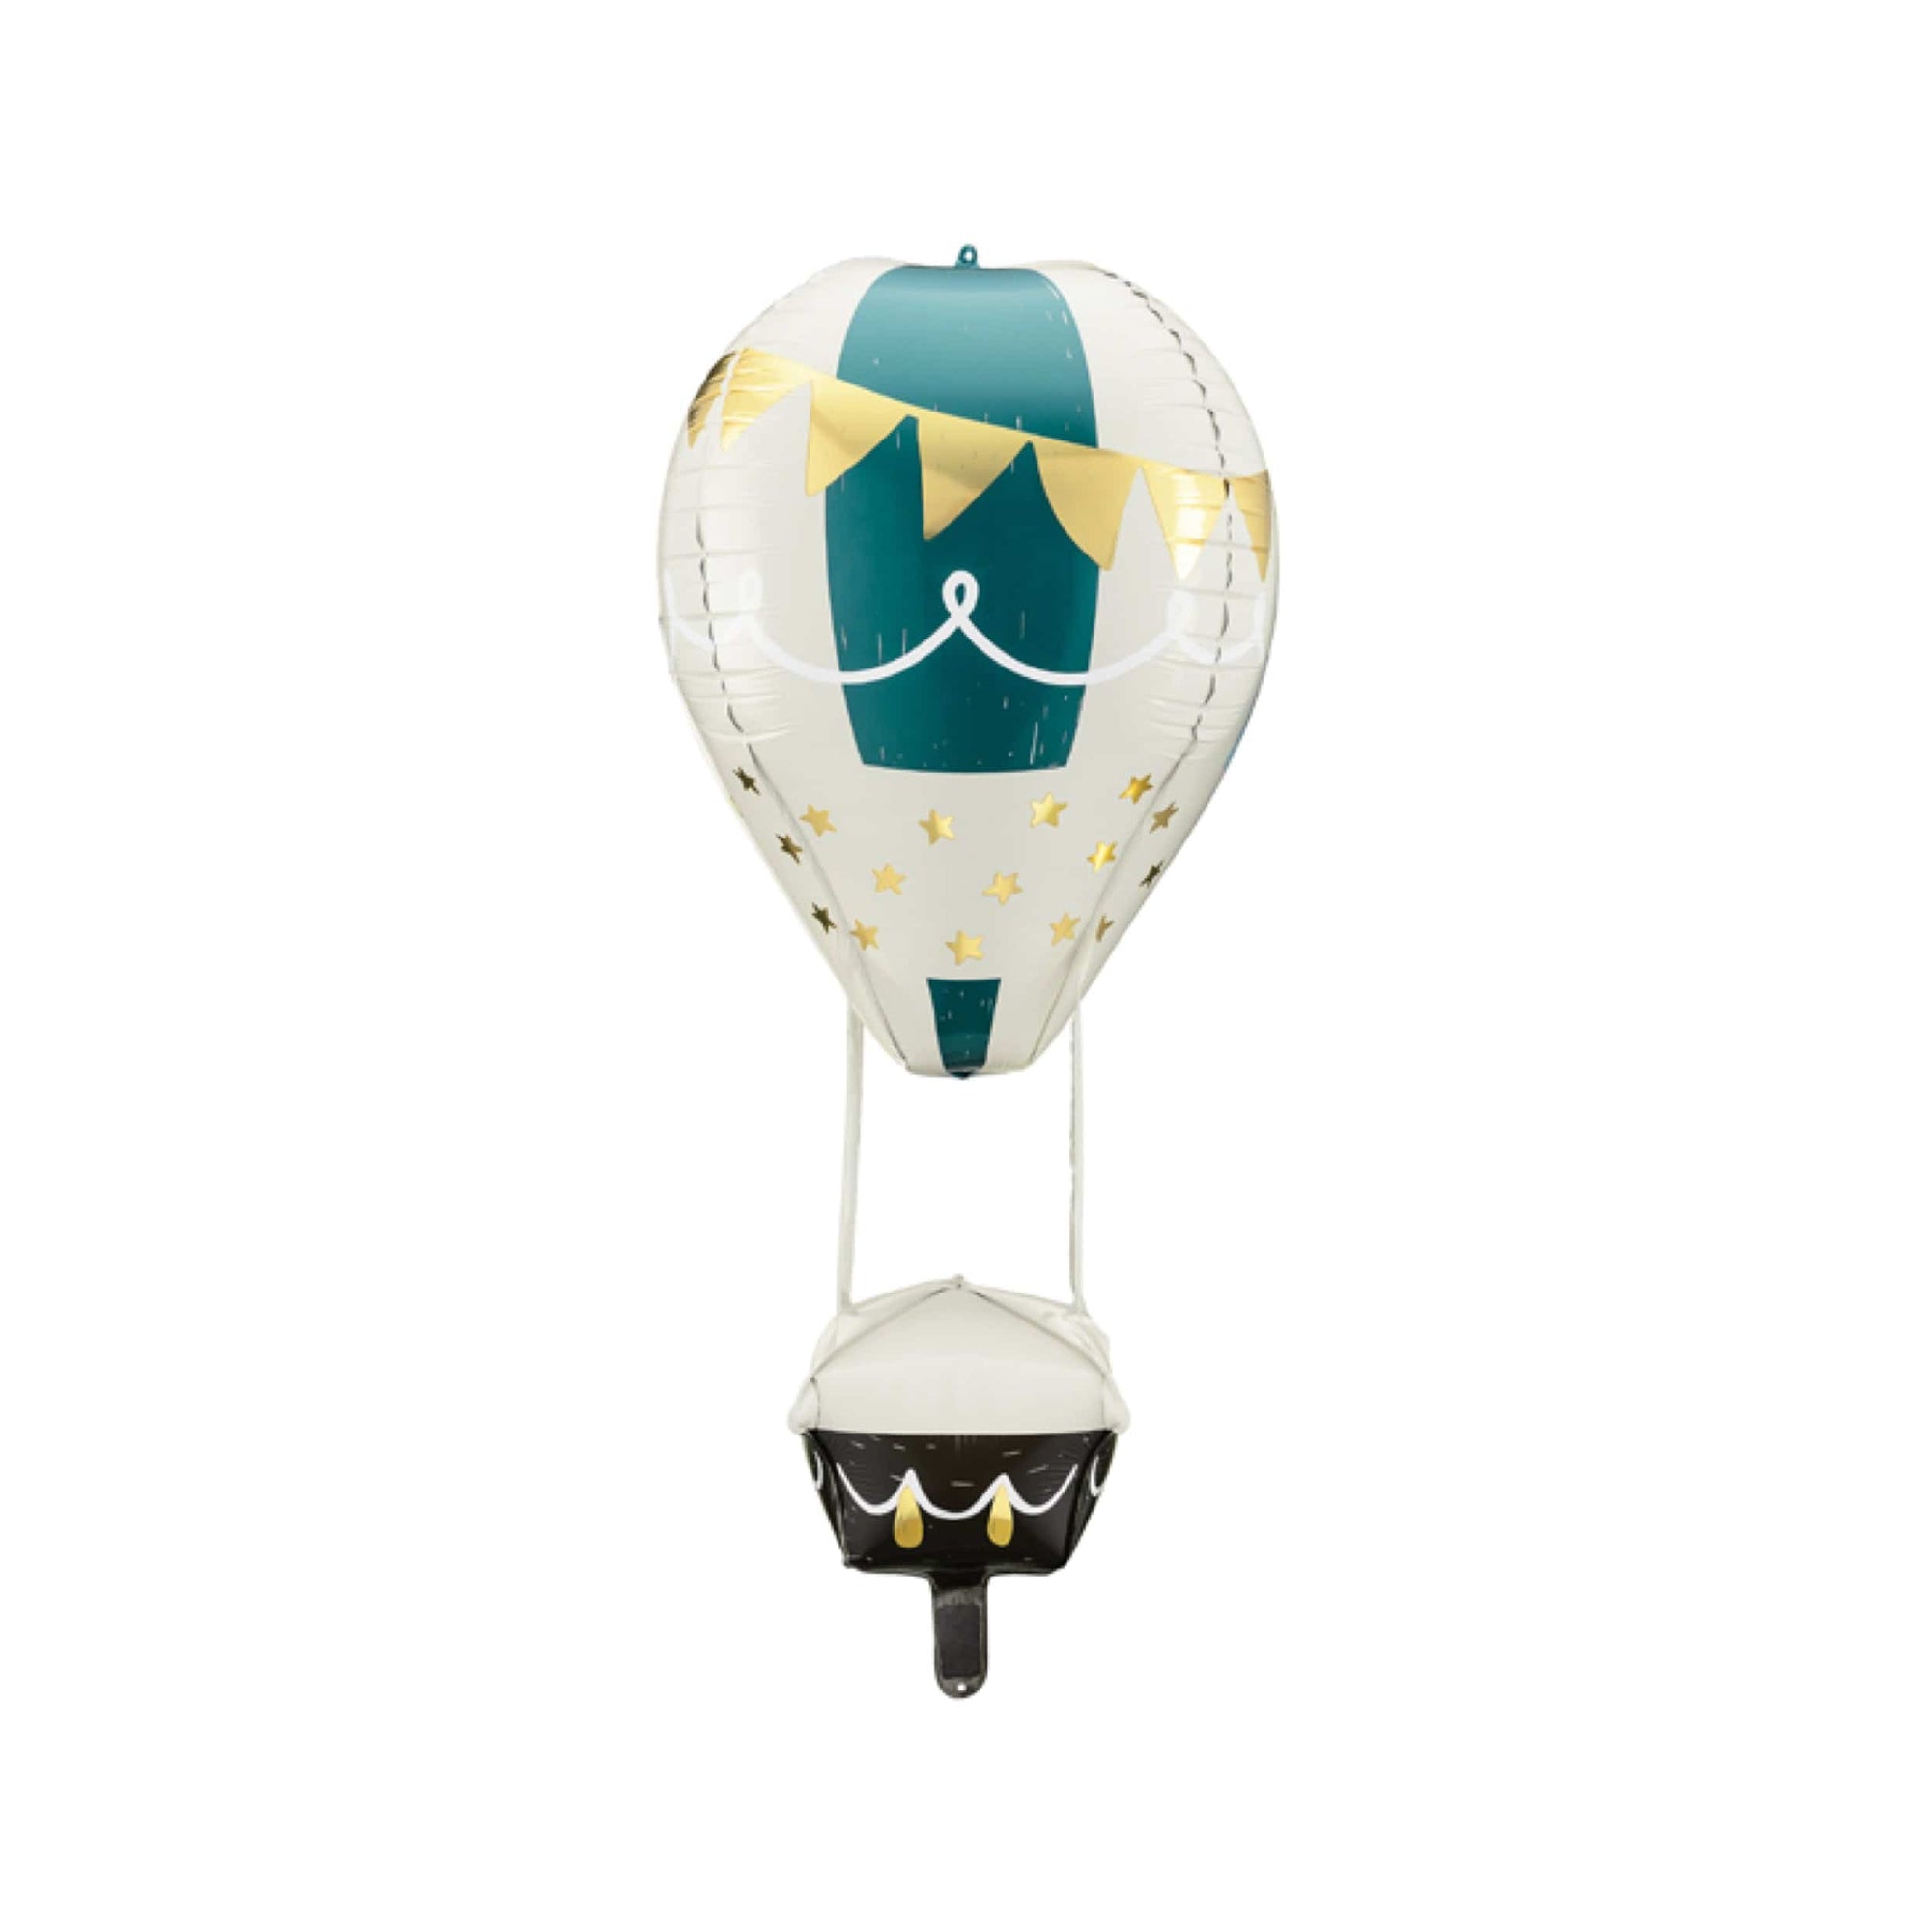 Decorative Hot Air Balloon